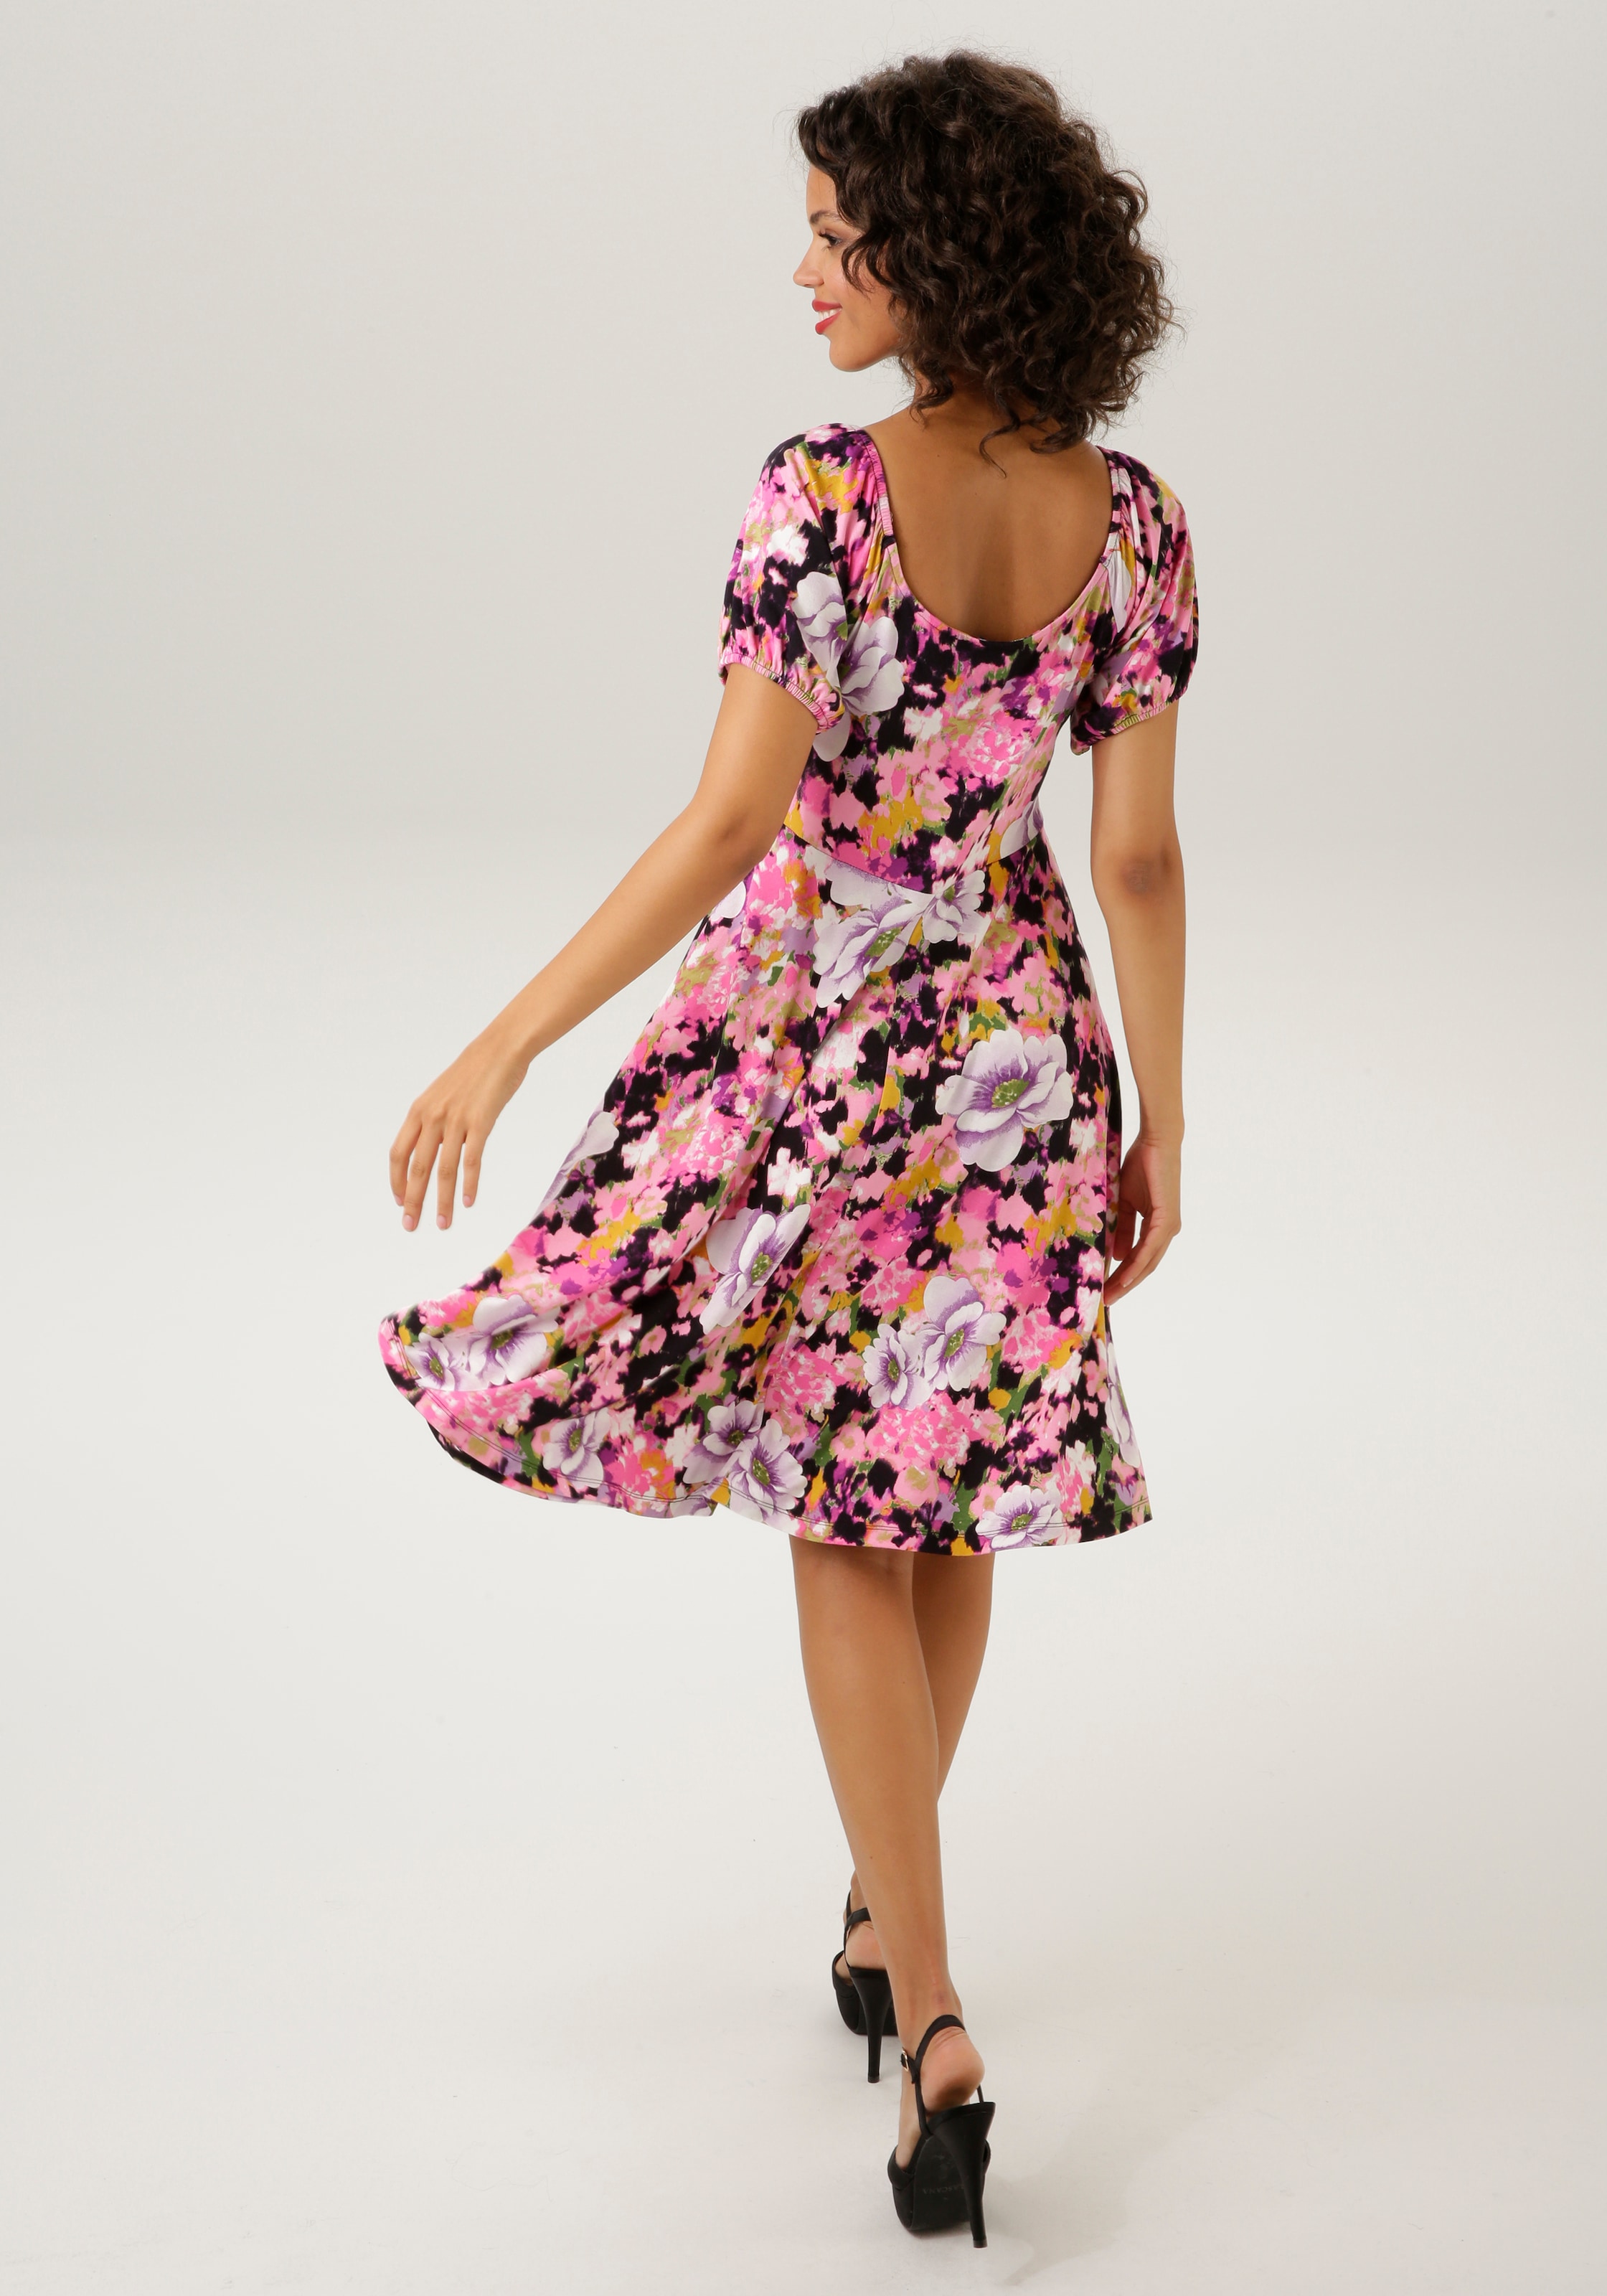 CASUAL KOLLEKTION - farbenfrohem - jedes NEUE mit Online OTTO Aniston ein Sommerkleid, Teil im Blumendruck Unikat Shop